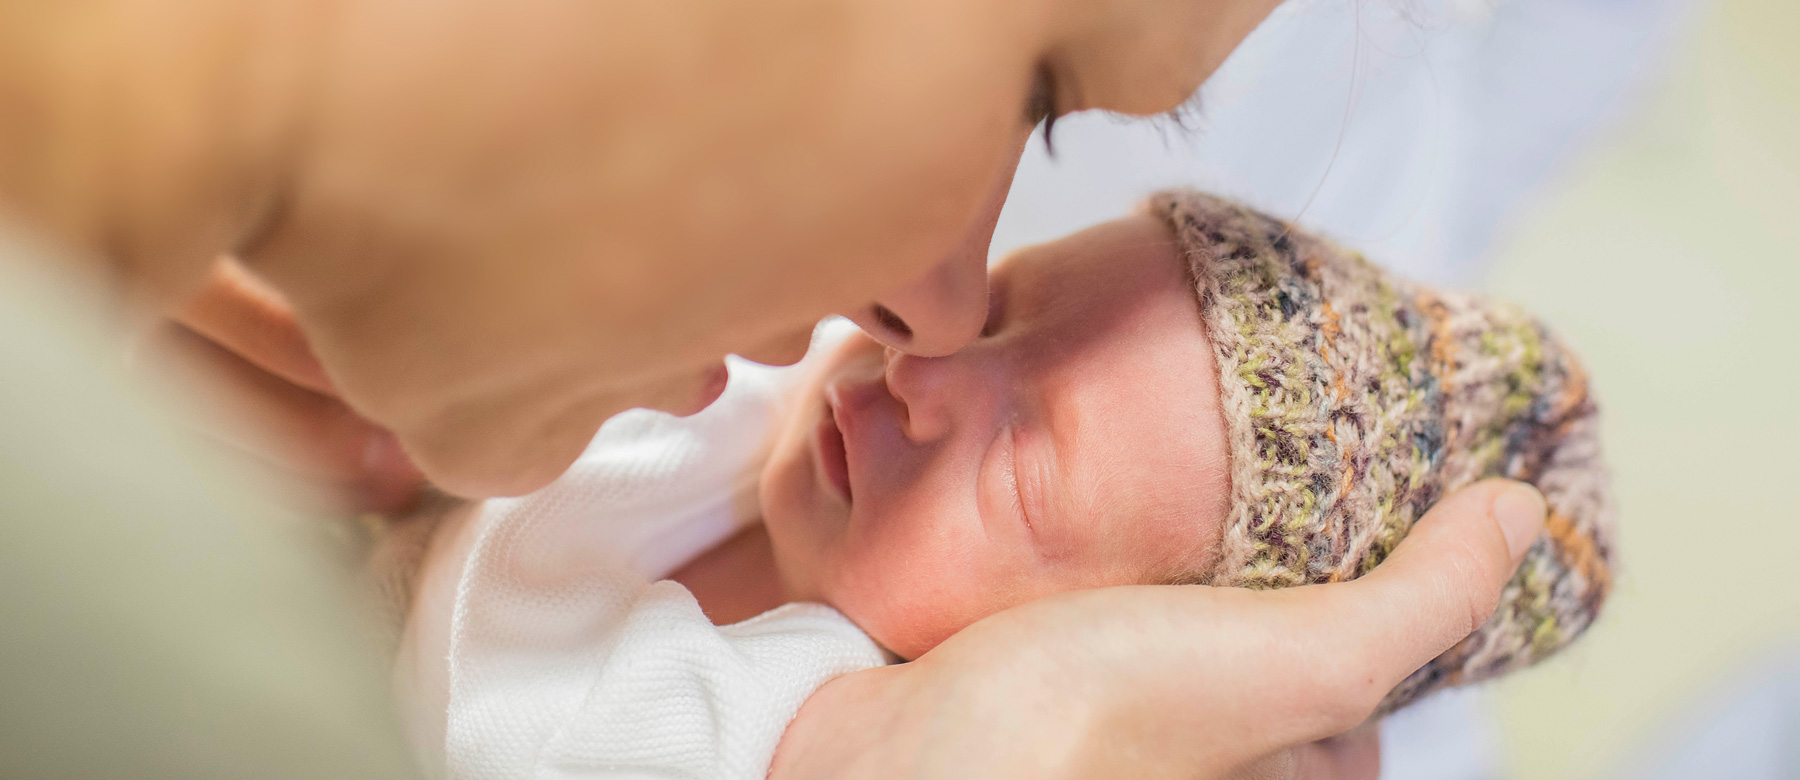 Mutter hält ihr Neugeborenes in den Händen und berührt mit ihrer Nase die Nase des Kindes.